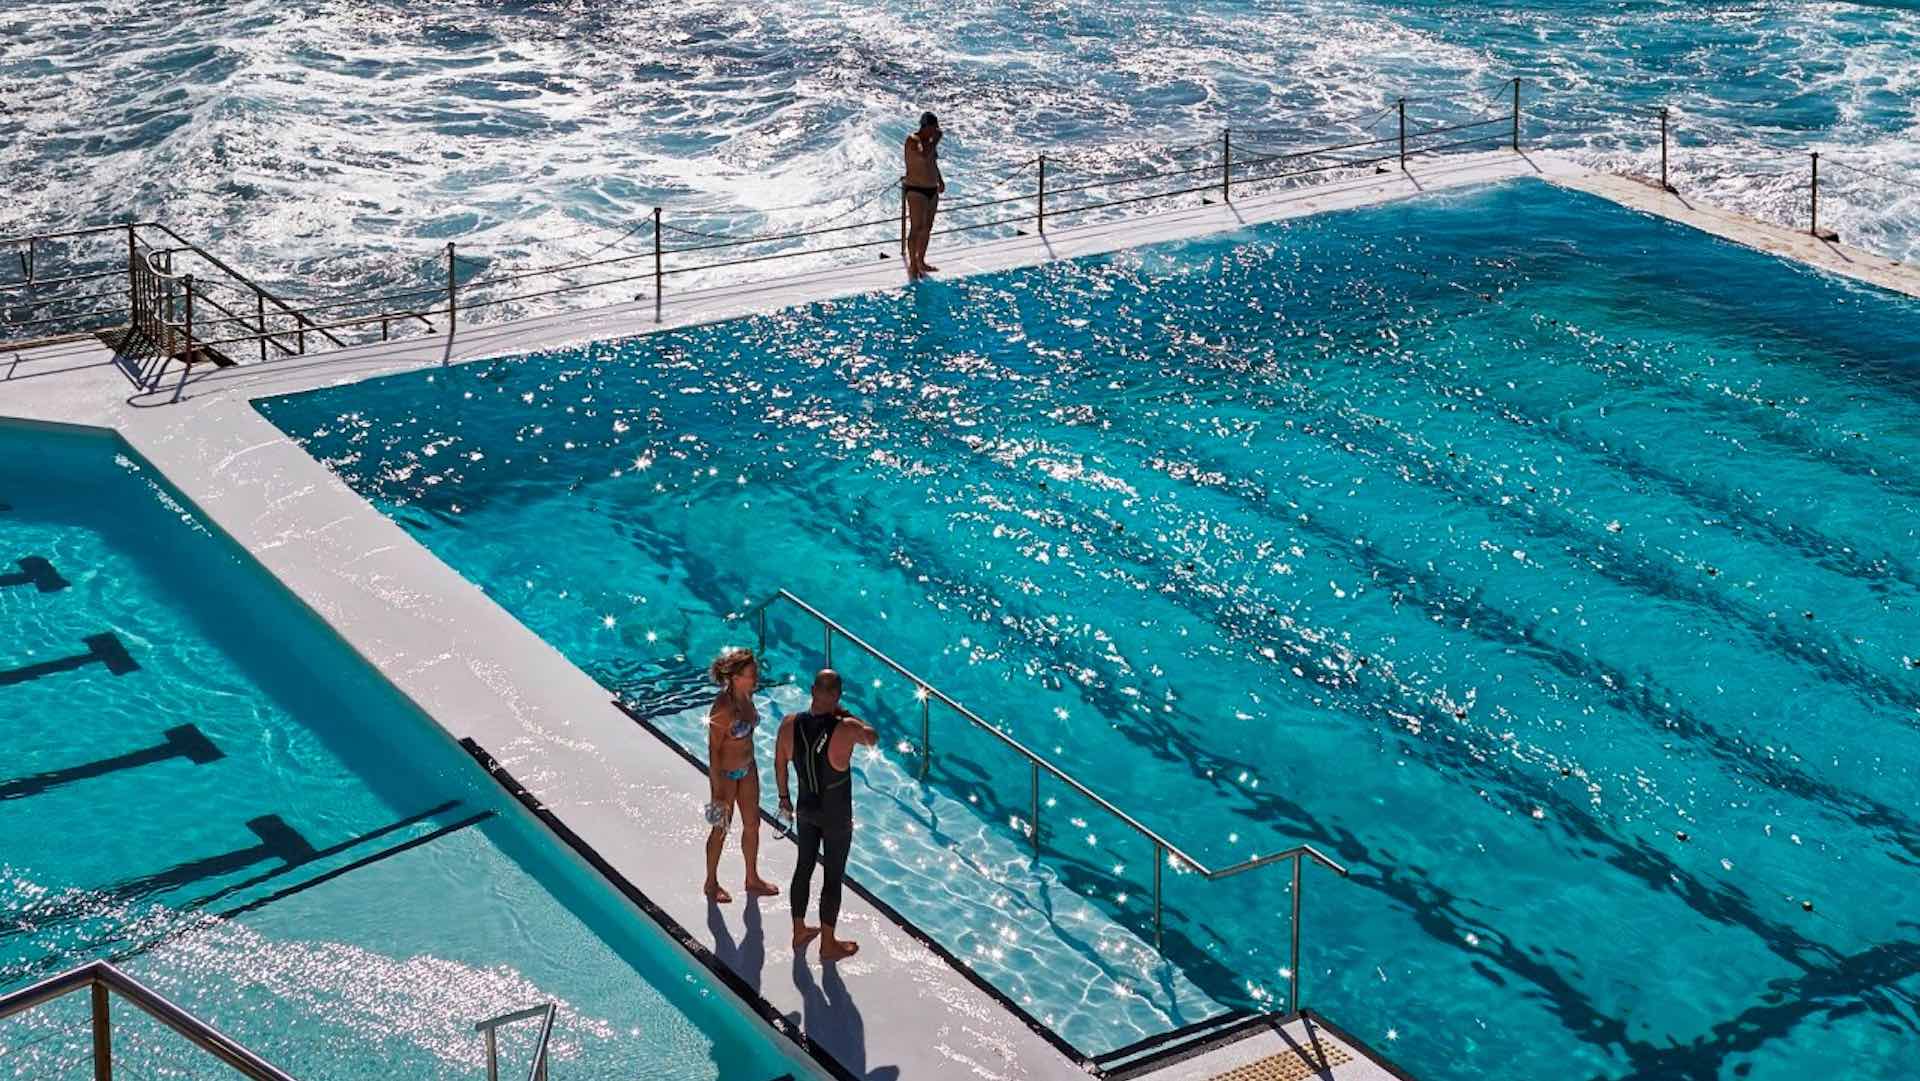 Bondi Icebergs Pool